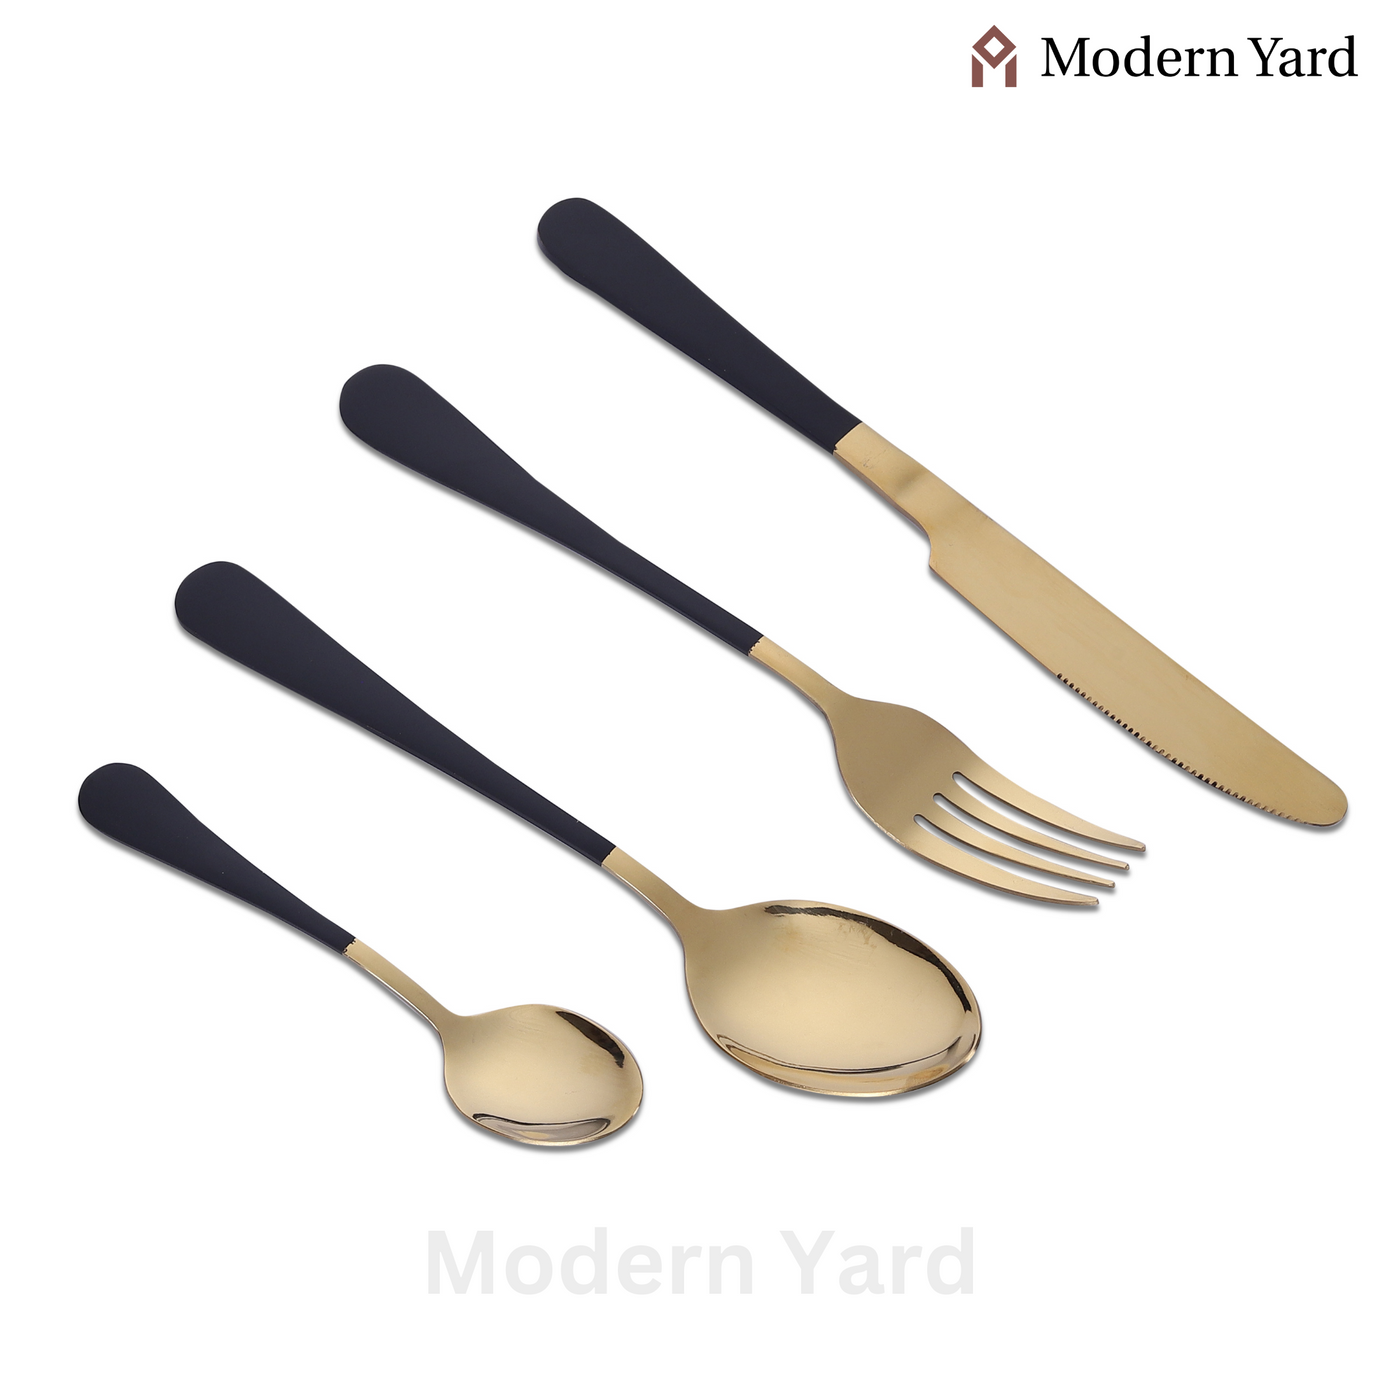 Black Golden Cutlery Set (24 Pcs)